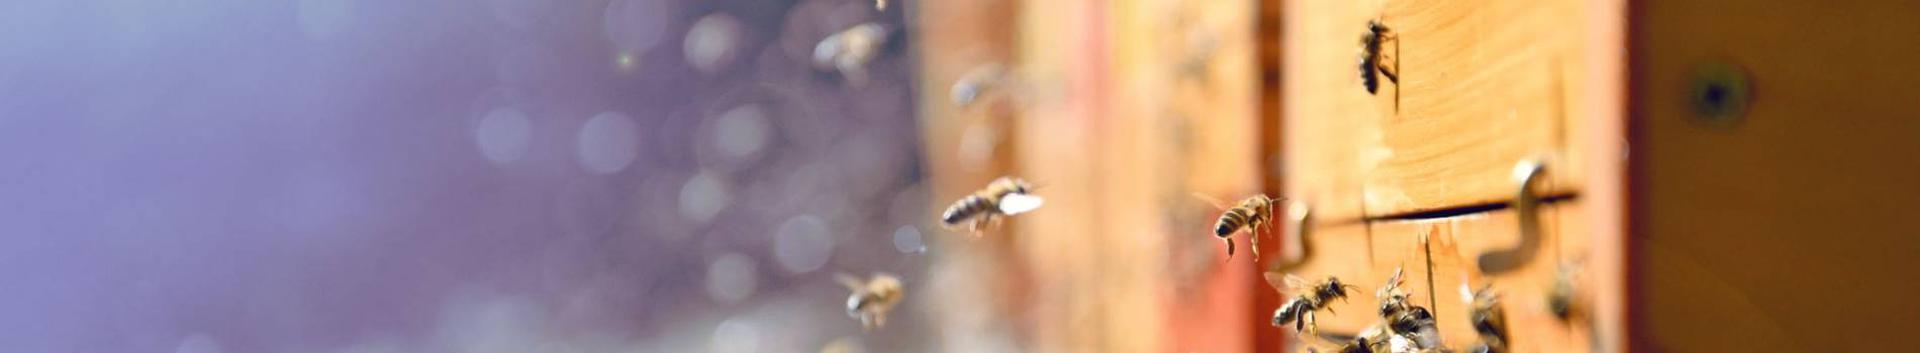 Meemaja OÜ tegeleb mesindusega. Esimesel majandusaastal puudusid arendus- ja uurimuskulutused. Samuti pole neid planeeritud järgmisse aastasse.